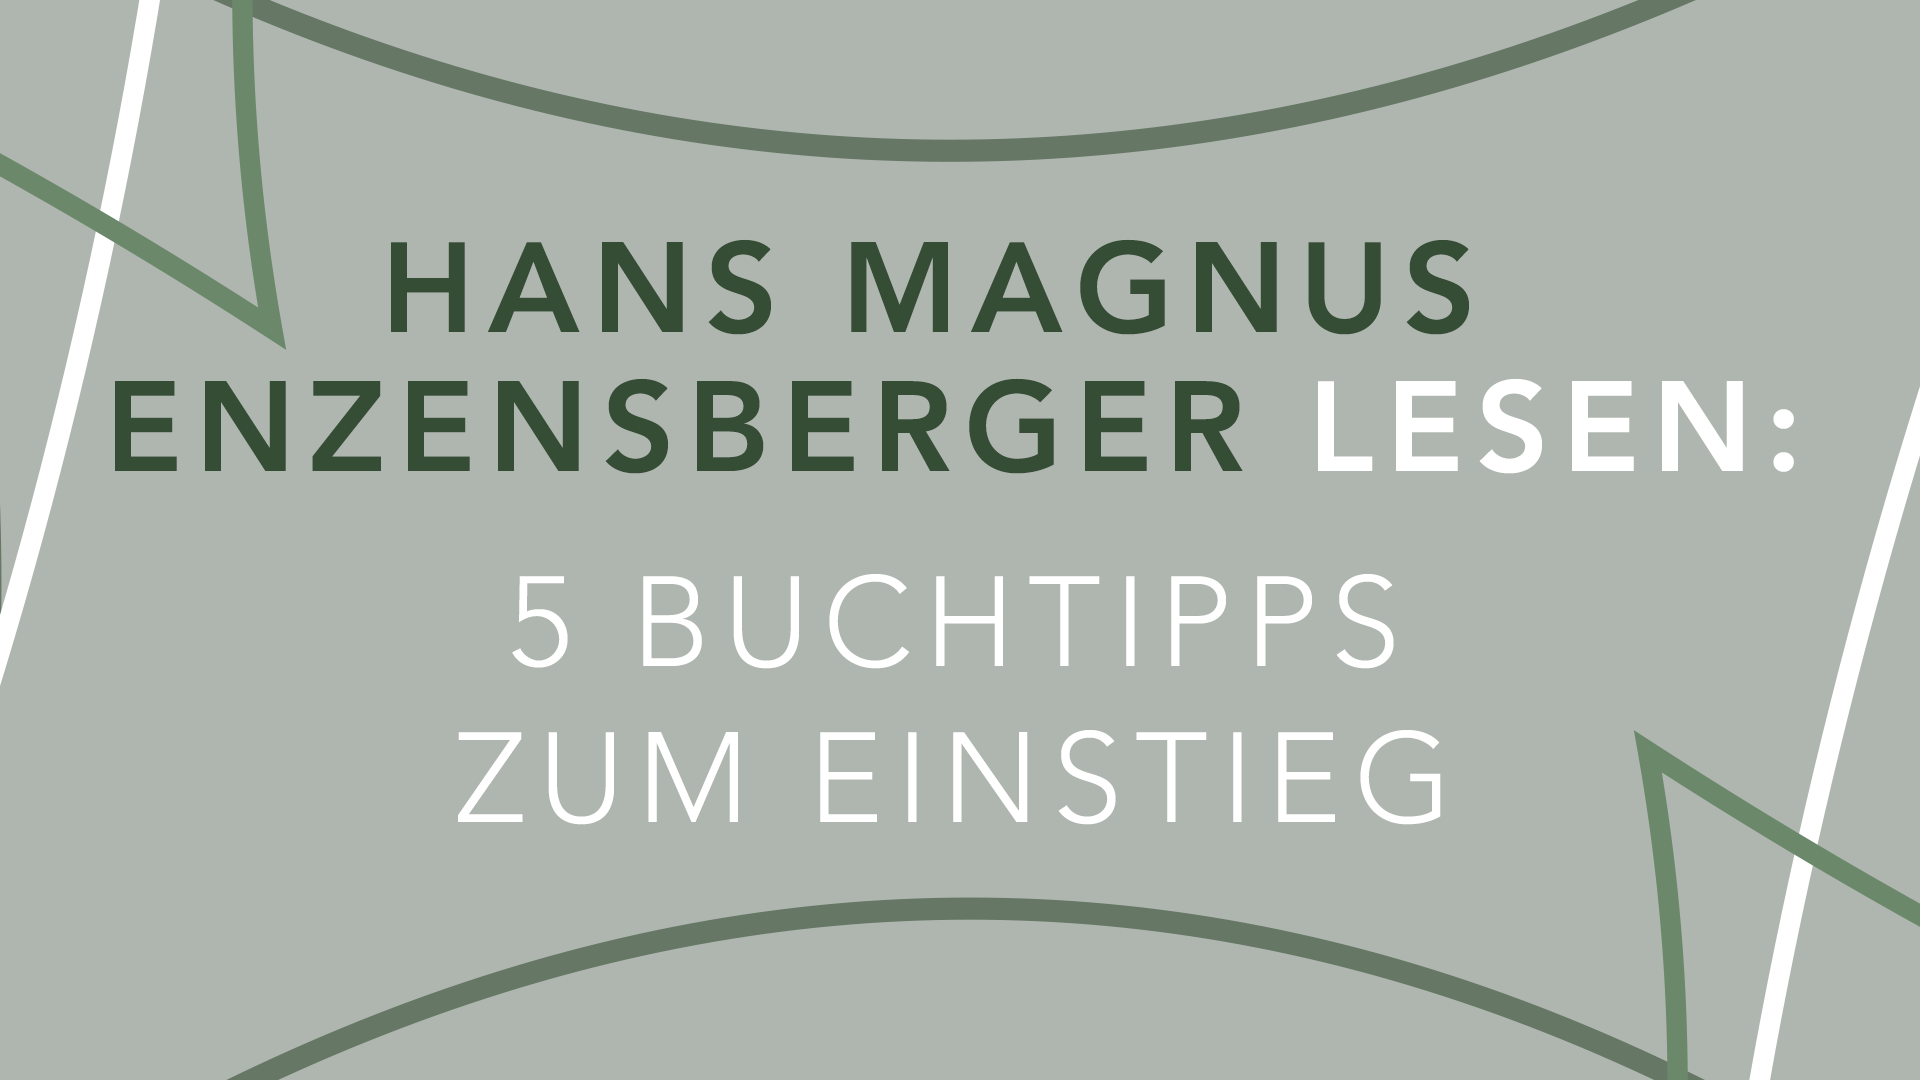 Hans Magnus Enzensberger lesen: 5 Buchtipps zum Einstieg 